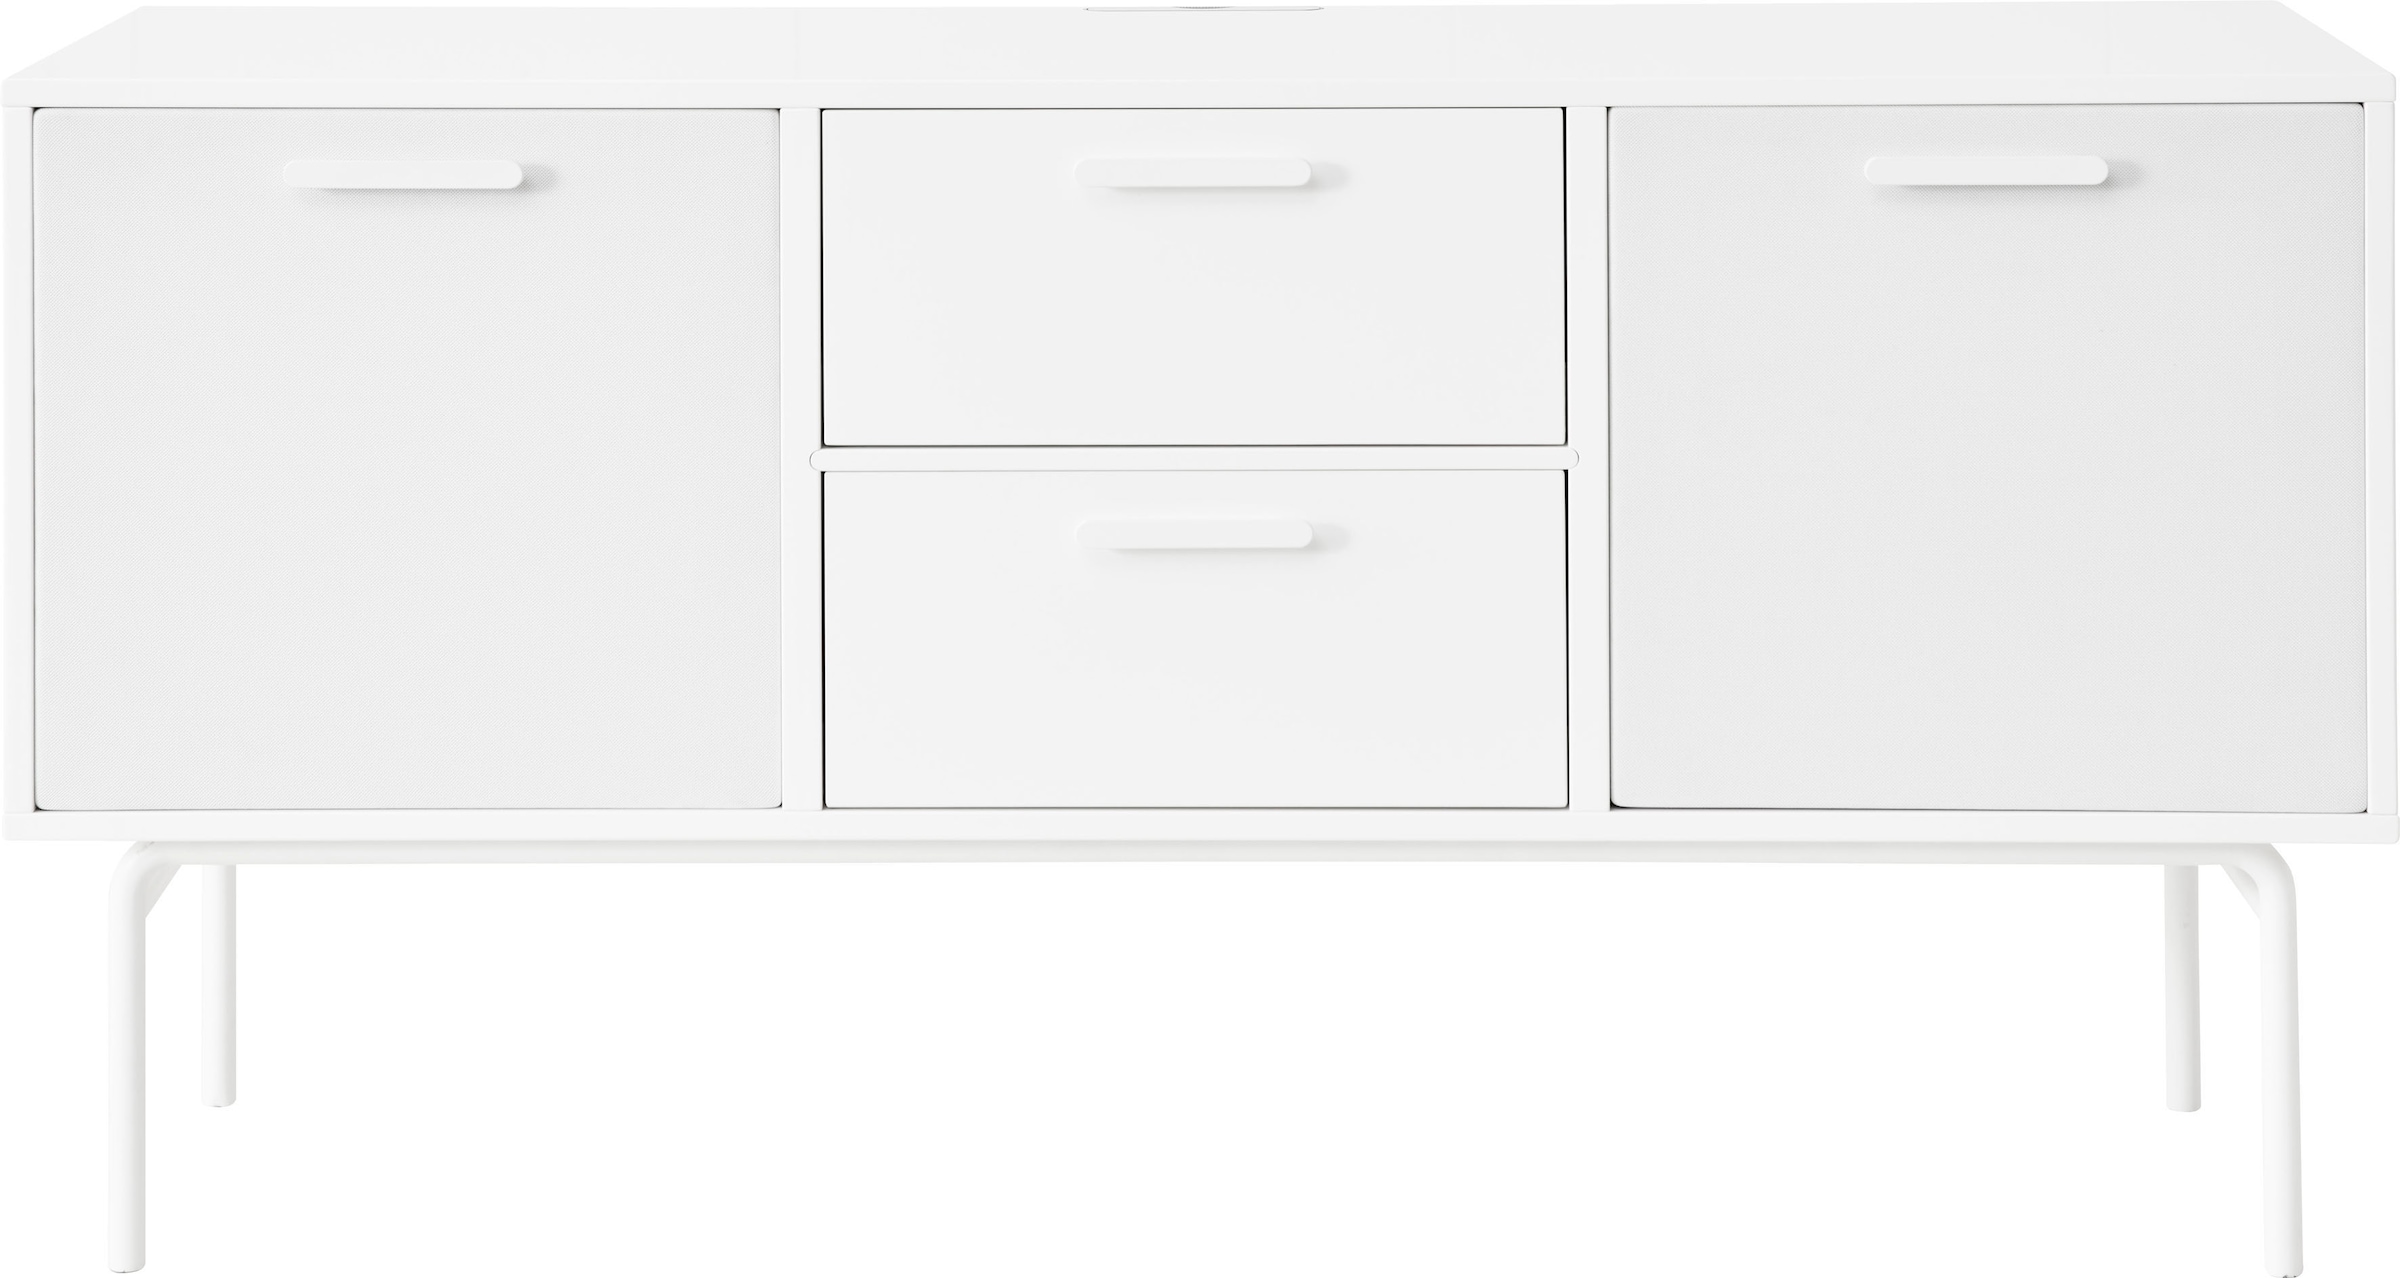 Hammel Furniture Media-Board »Keep by Hammel Modul 007«, mit festem Fachboden, Wandmontage/ stehend montierbar, Breite 113,8 cm